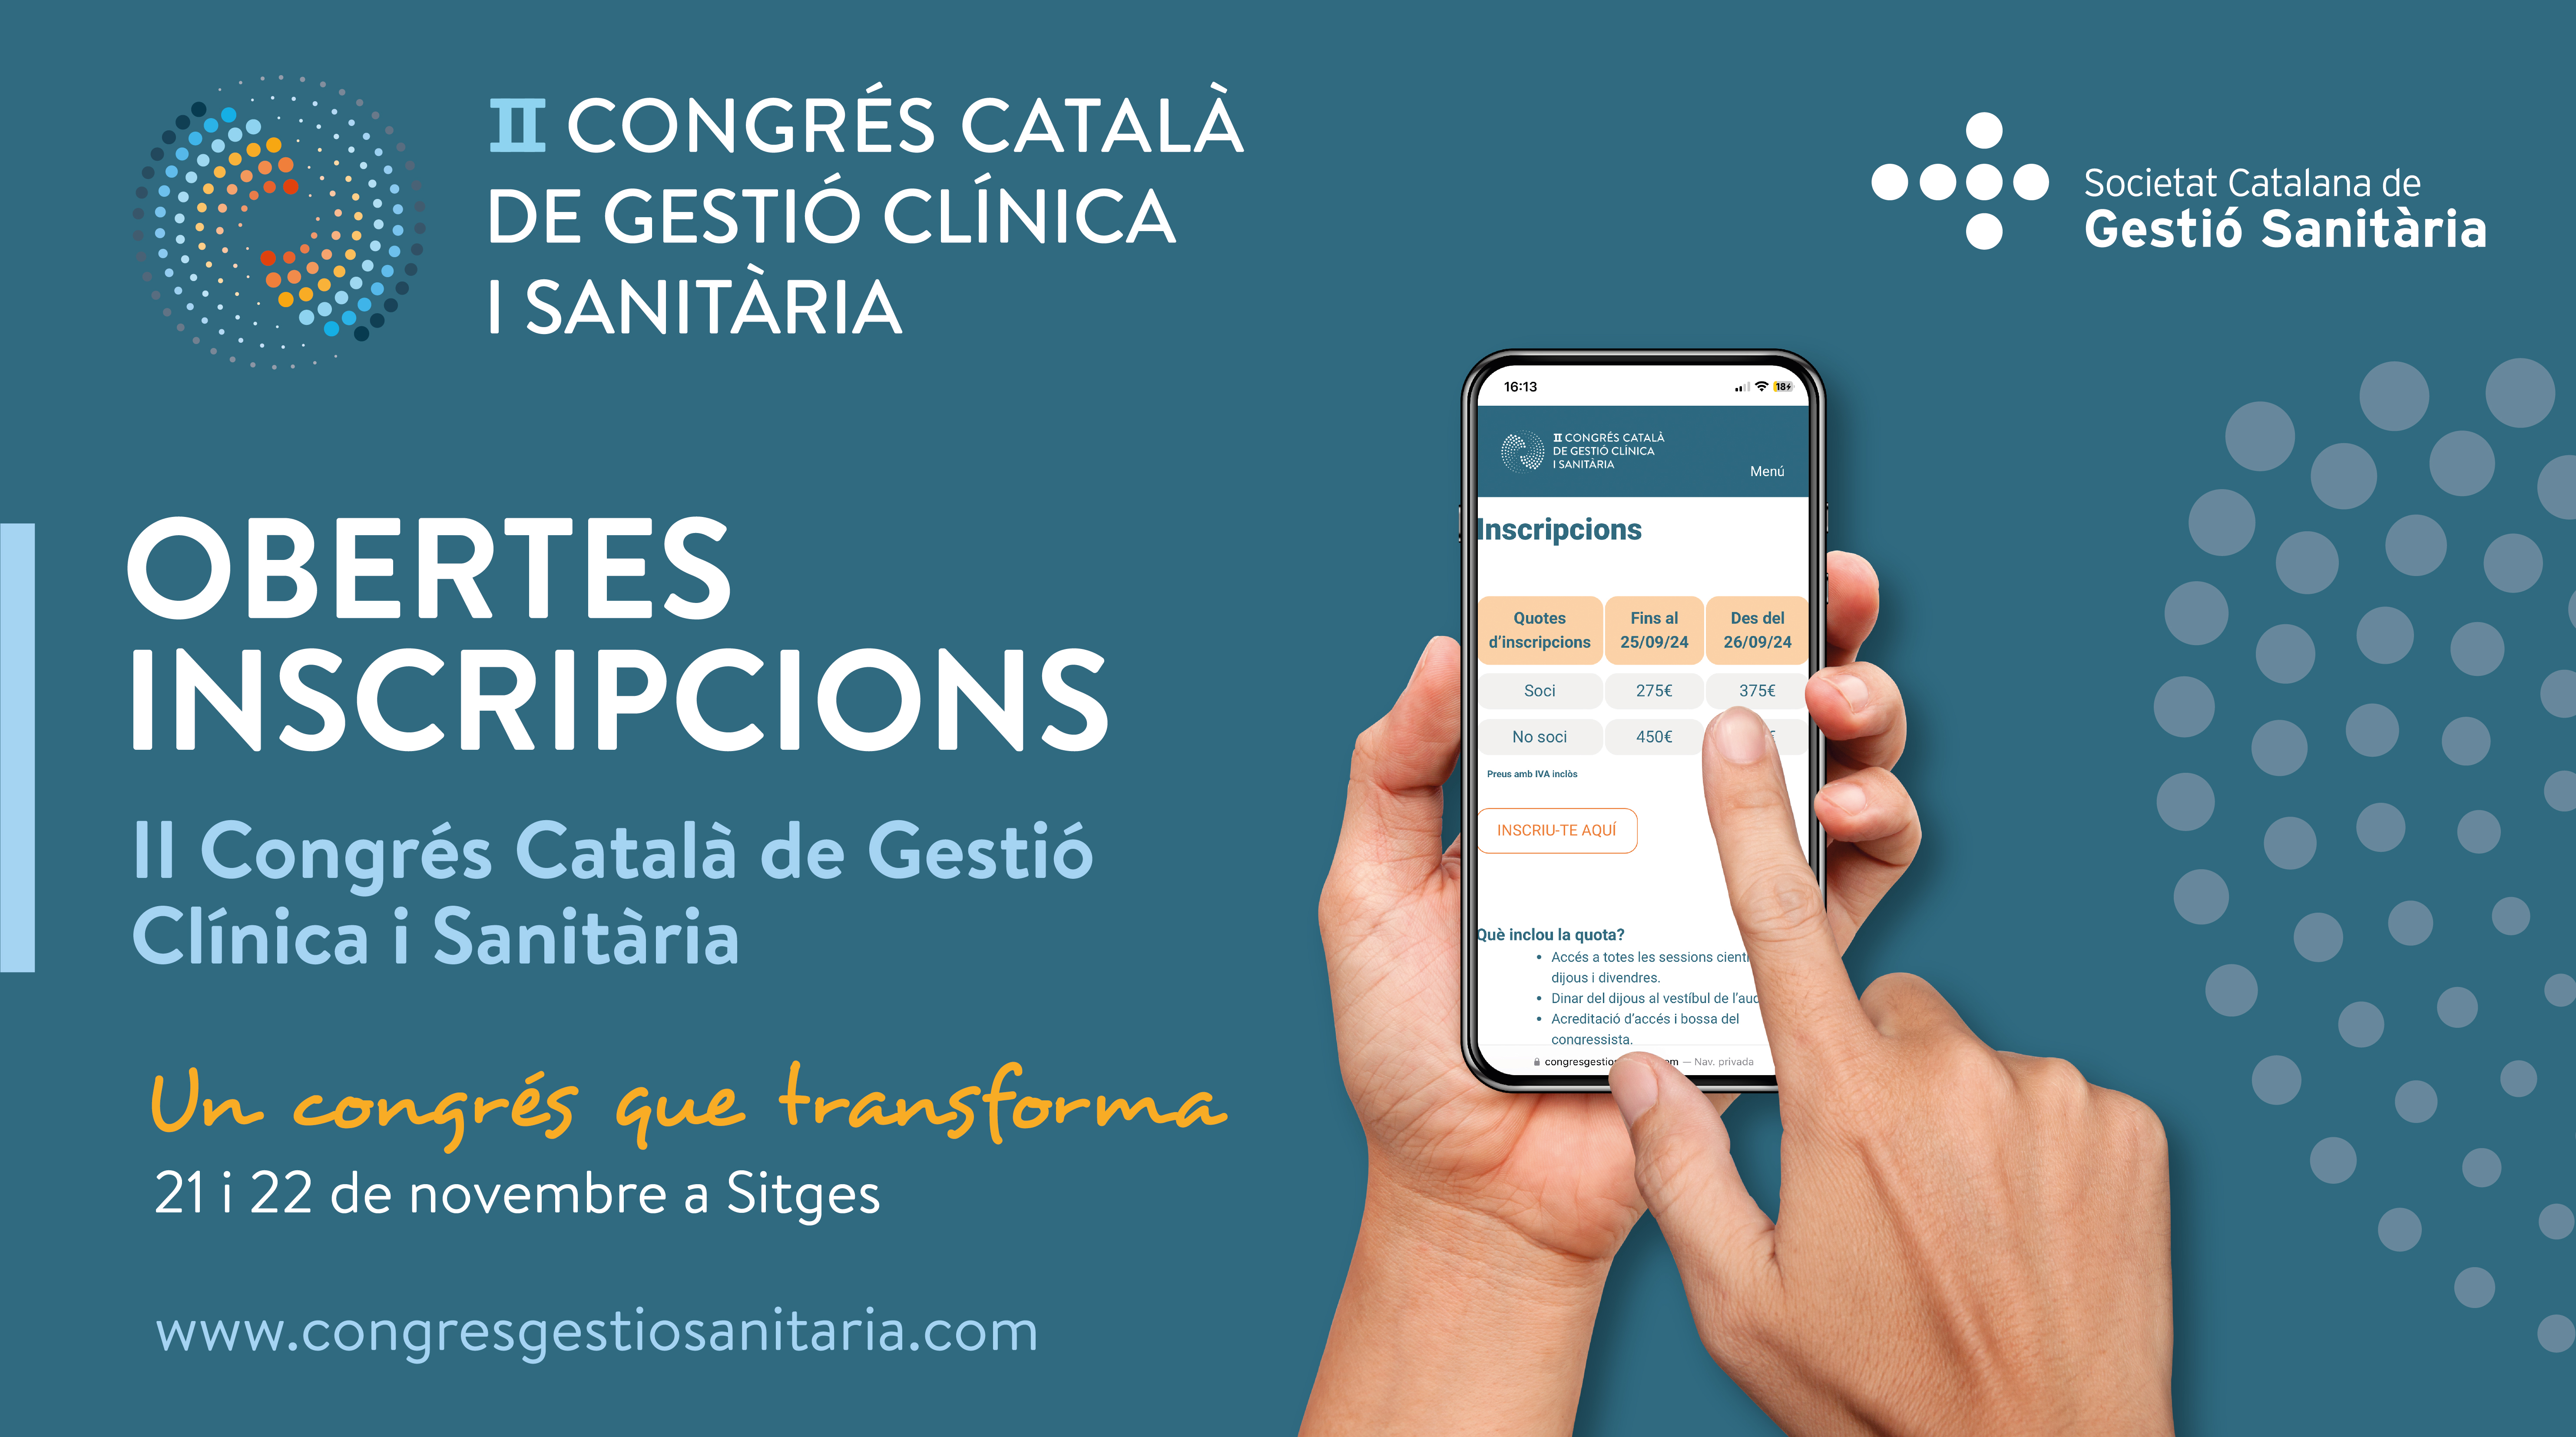 II Congrés Català de Gestió Clínica i Sanitària a Sitges